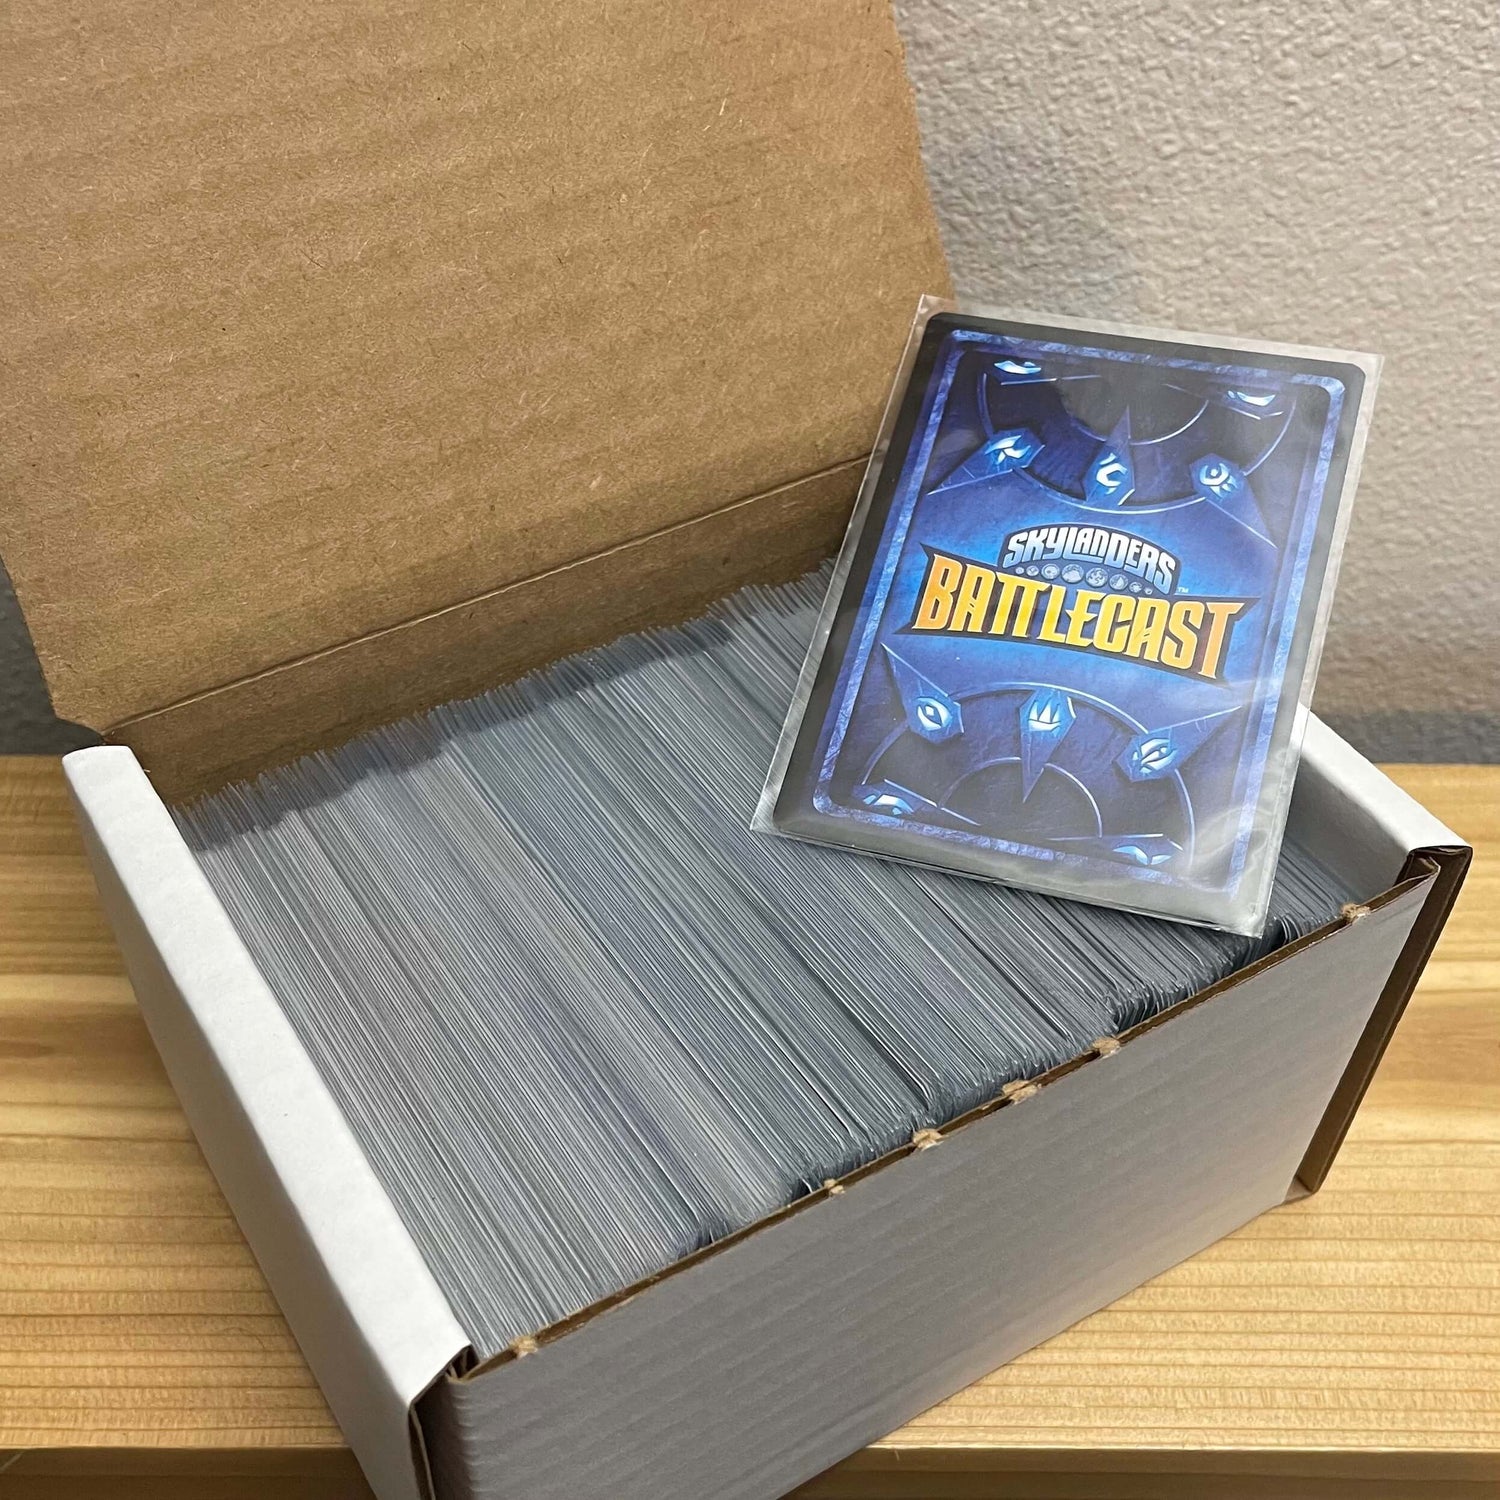 Complete Set of 270 Skylanders Battlecast Cards